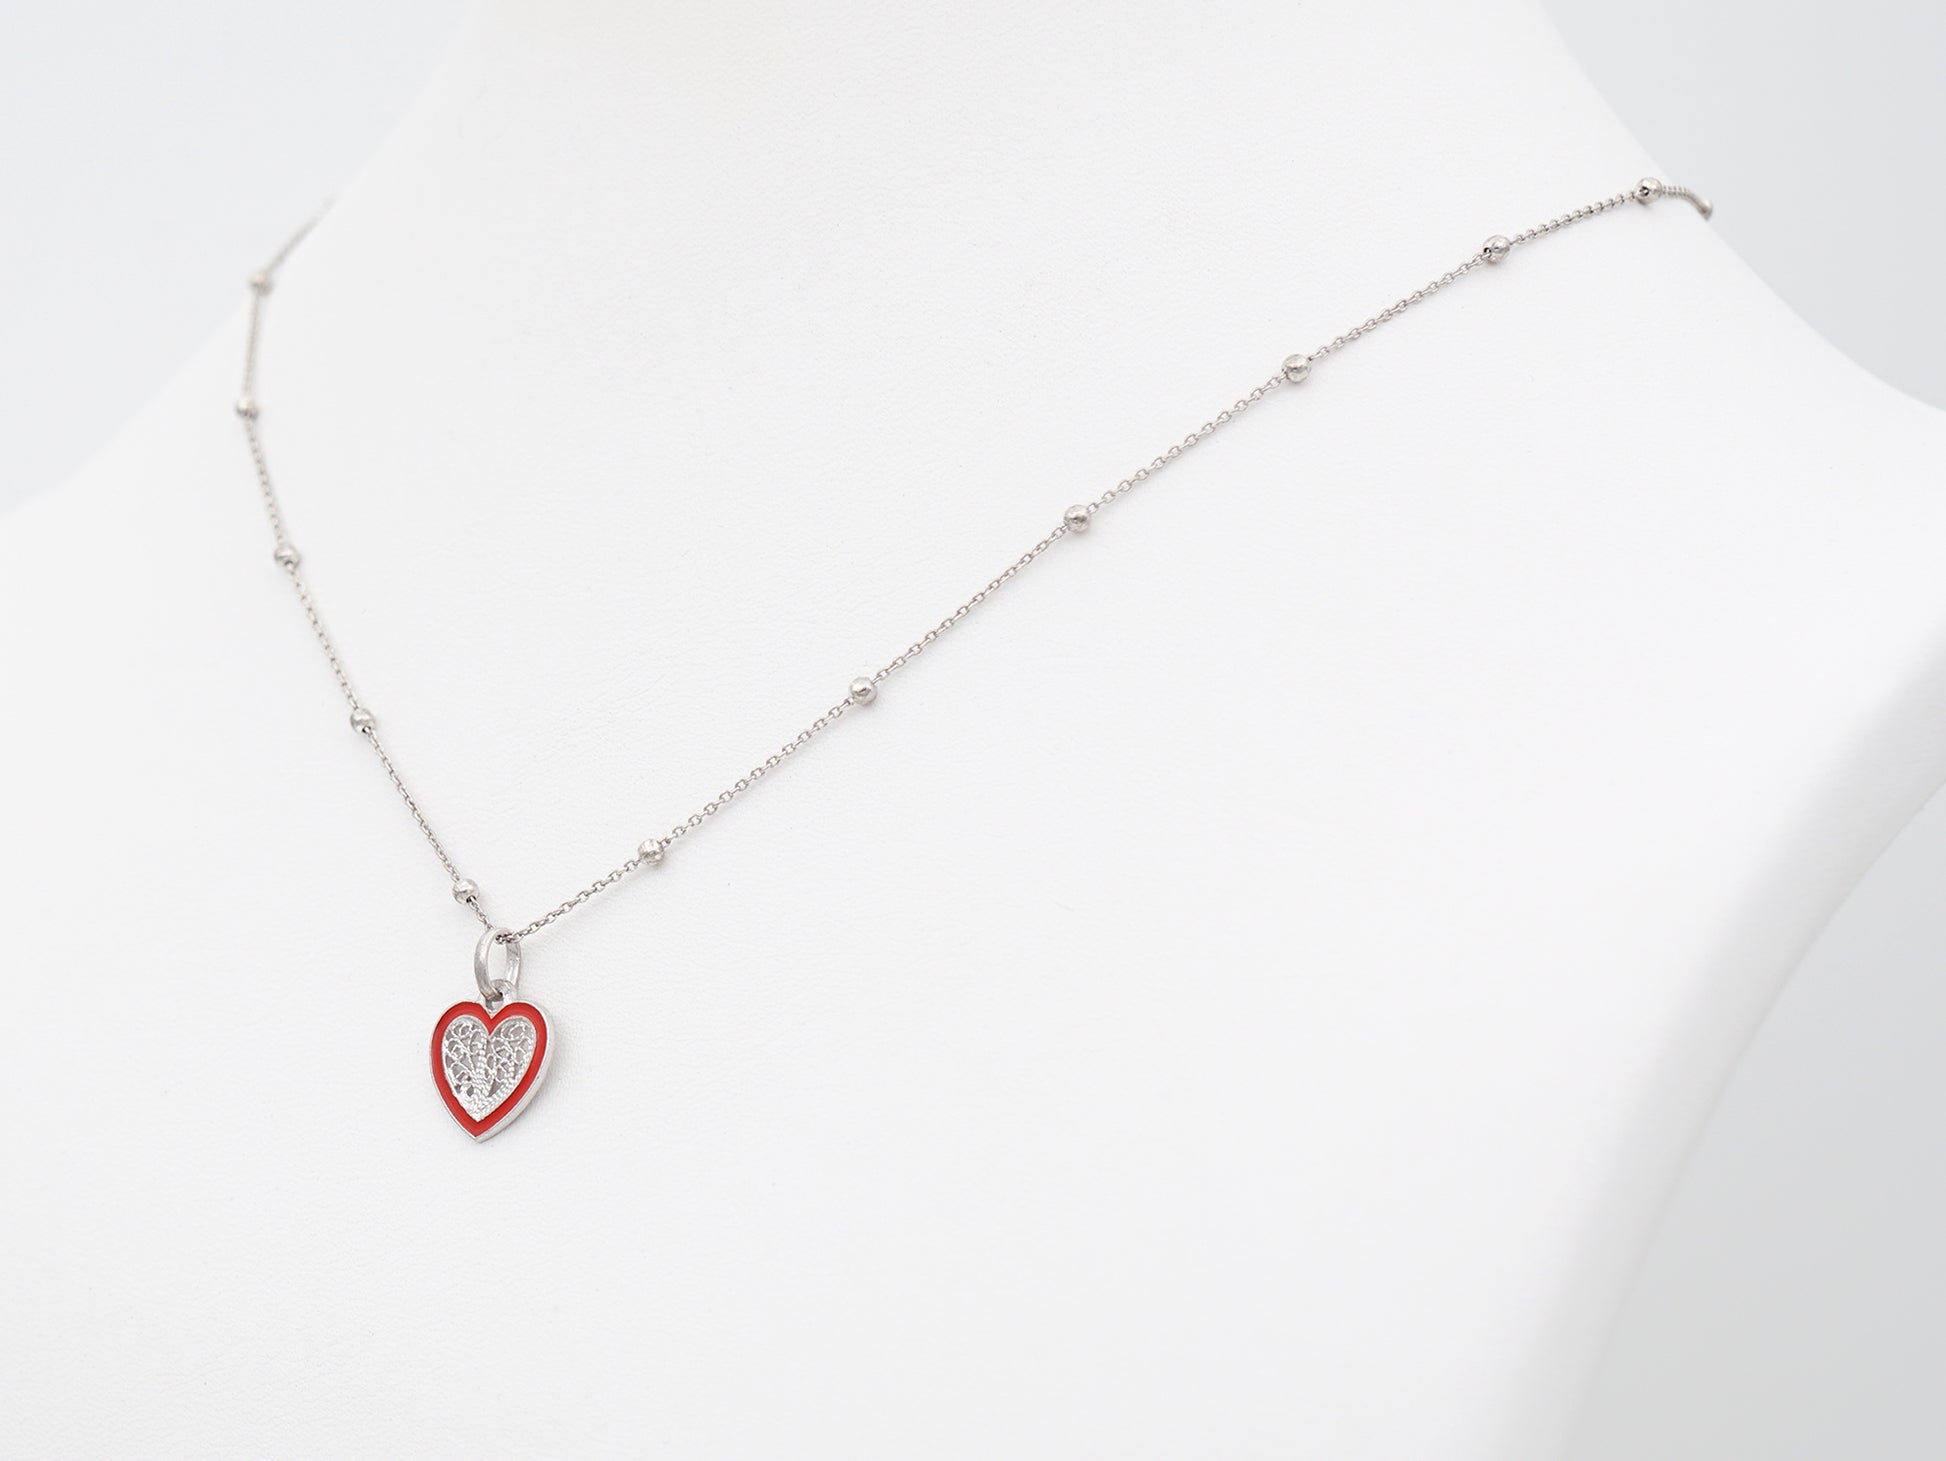 Colar Coração Pequeno Esmalte Vermelho, Filigrana Portuguesa, Prata de Lei 925 - Colar em exposição